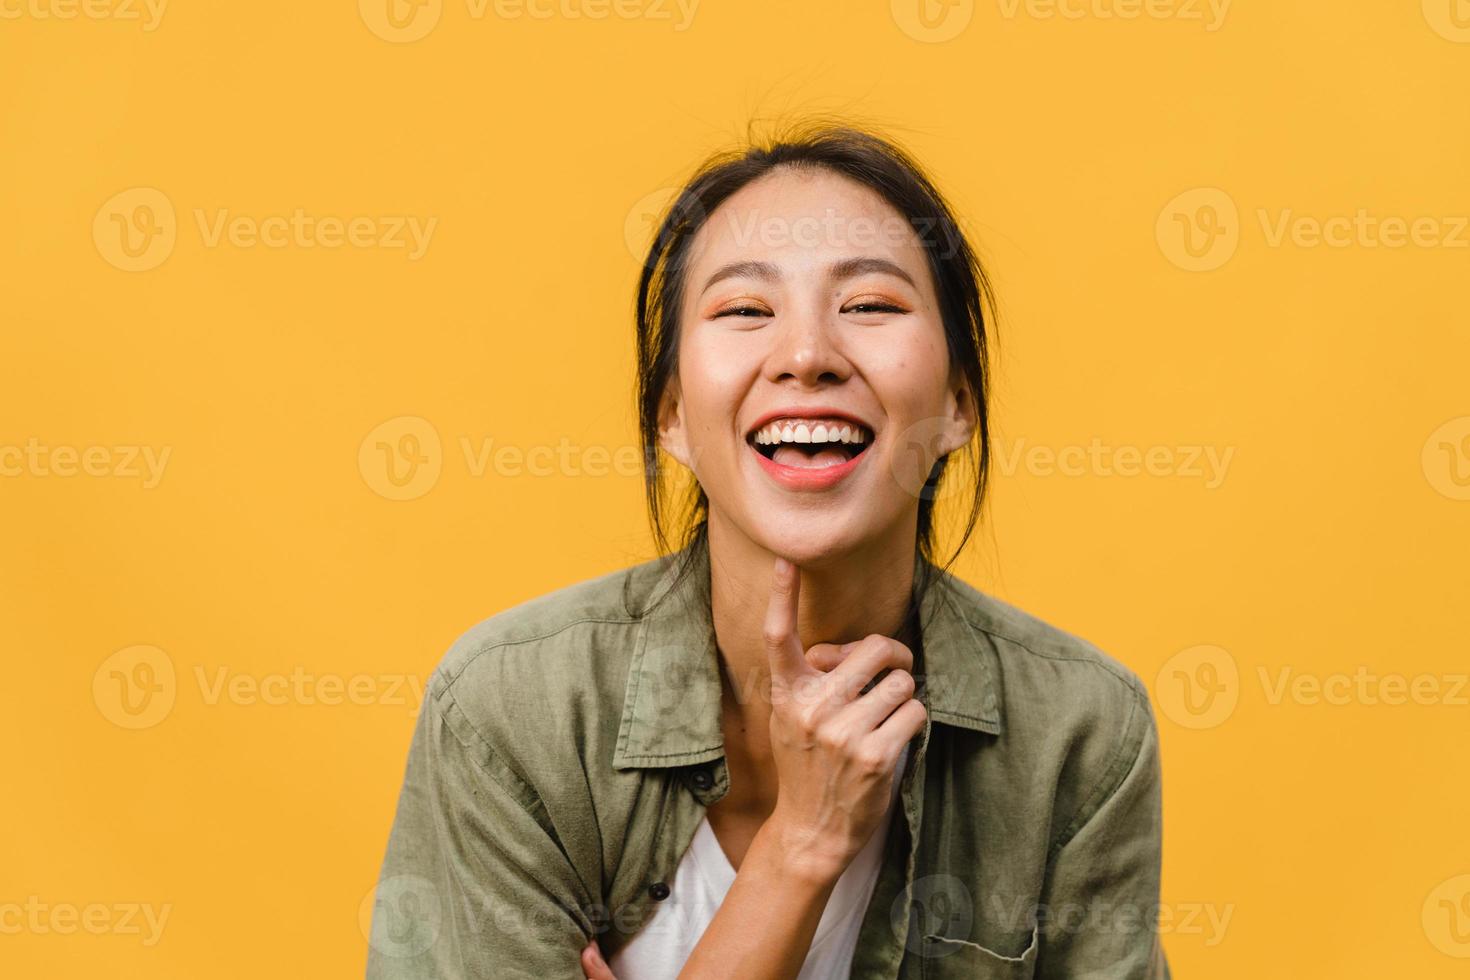 jovem asiática com expressão positiva, sorriso largo, vestida com roupas casuais e olhando para a câmera sobre fundo amarelo. feliz adorável feliz mulher alegra sucesso. conceito de expressão facial. foto